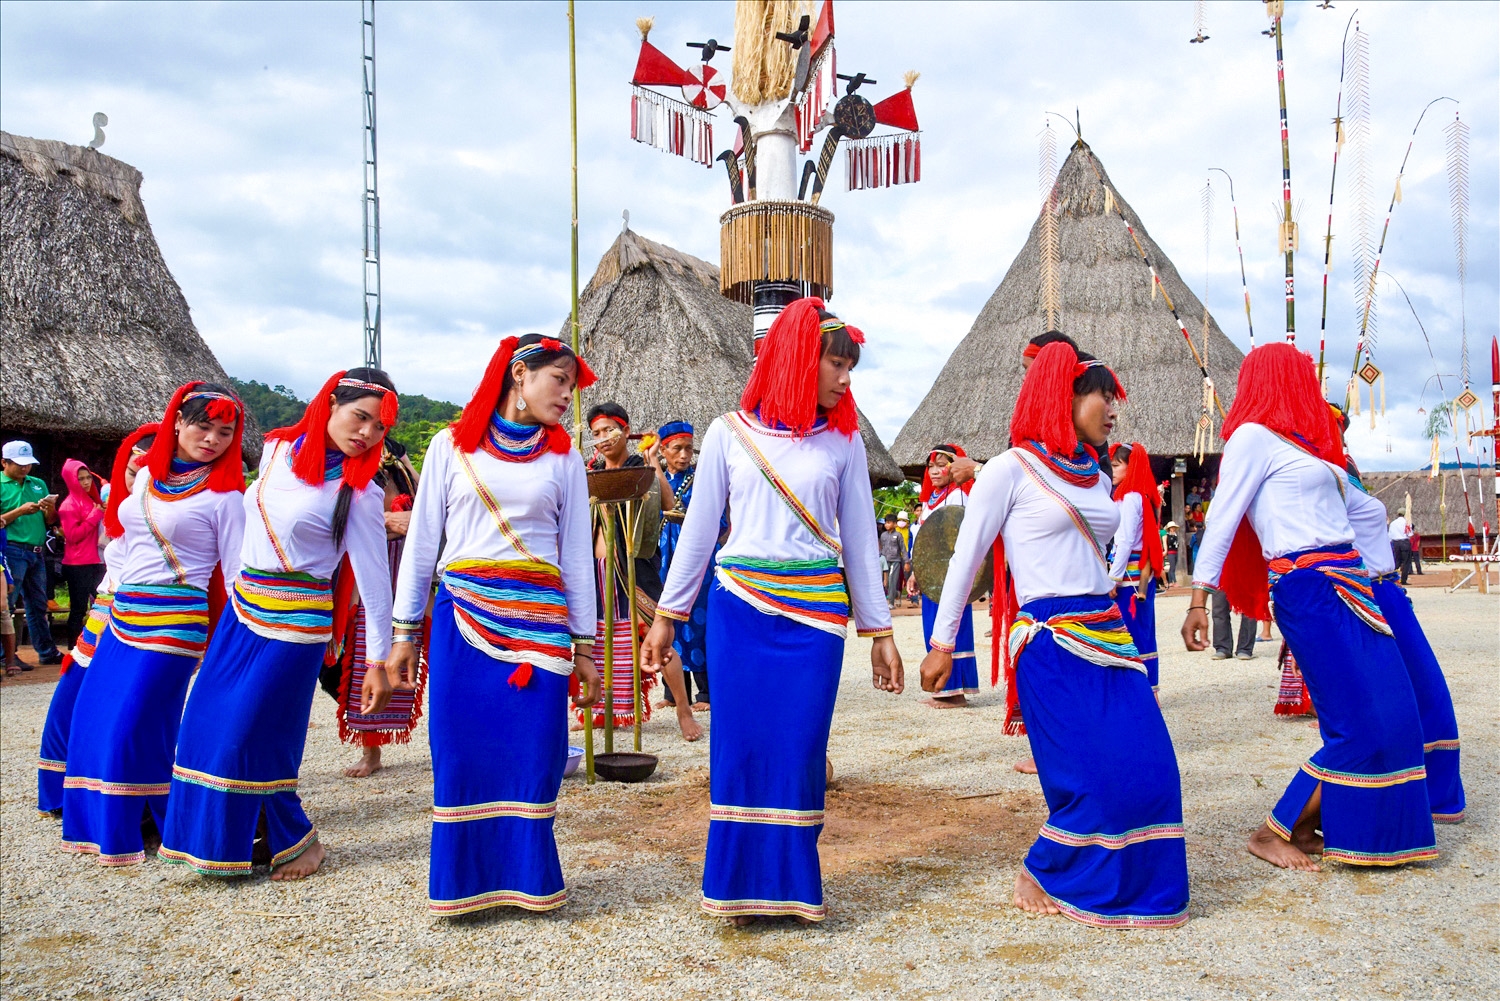 Điệu múa ka đấu của dân tộc Co huyện Trà Bồng (Quảng Ngãi) tại Lễ hội phục dựng cây nêu các dân tộc tại huyện Tây Giang (Quảng Nam)